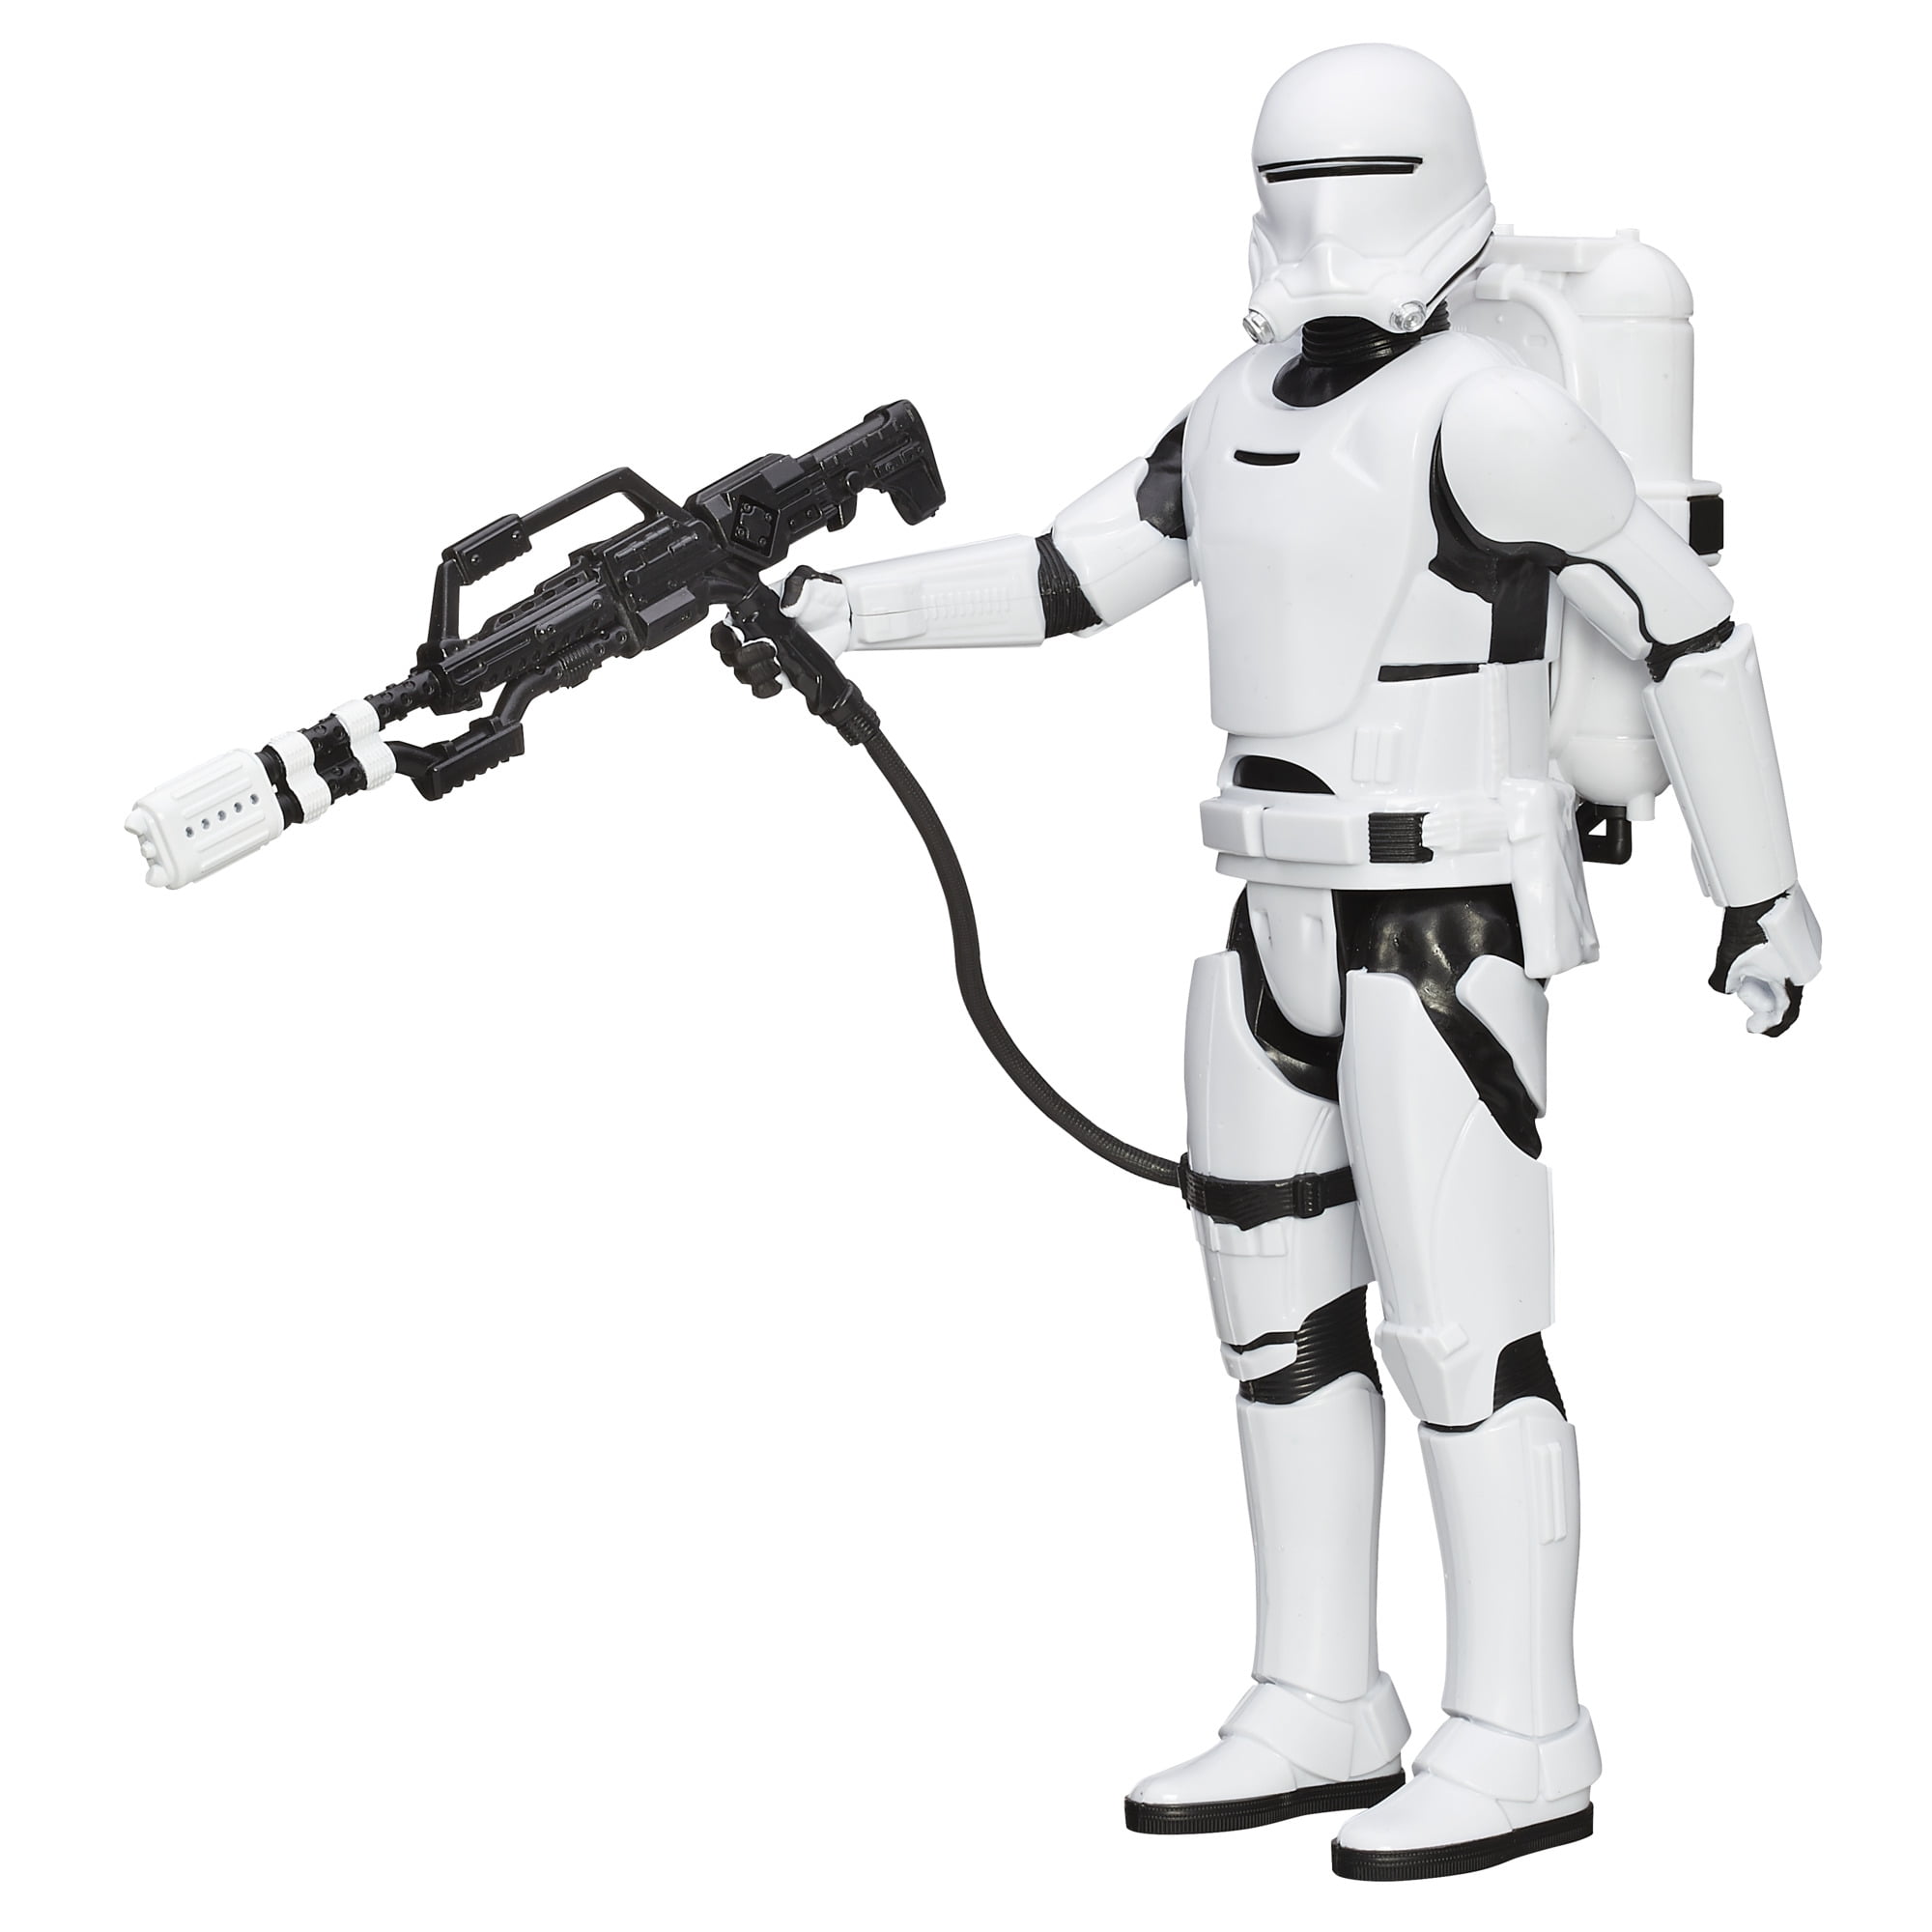 Star Wars The Force Awakens Finn Jakku Action Figure Doll 2015 Hasbro 12 Inch for sale online 